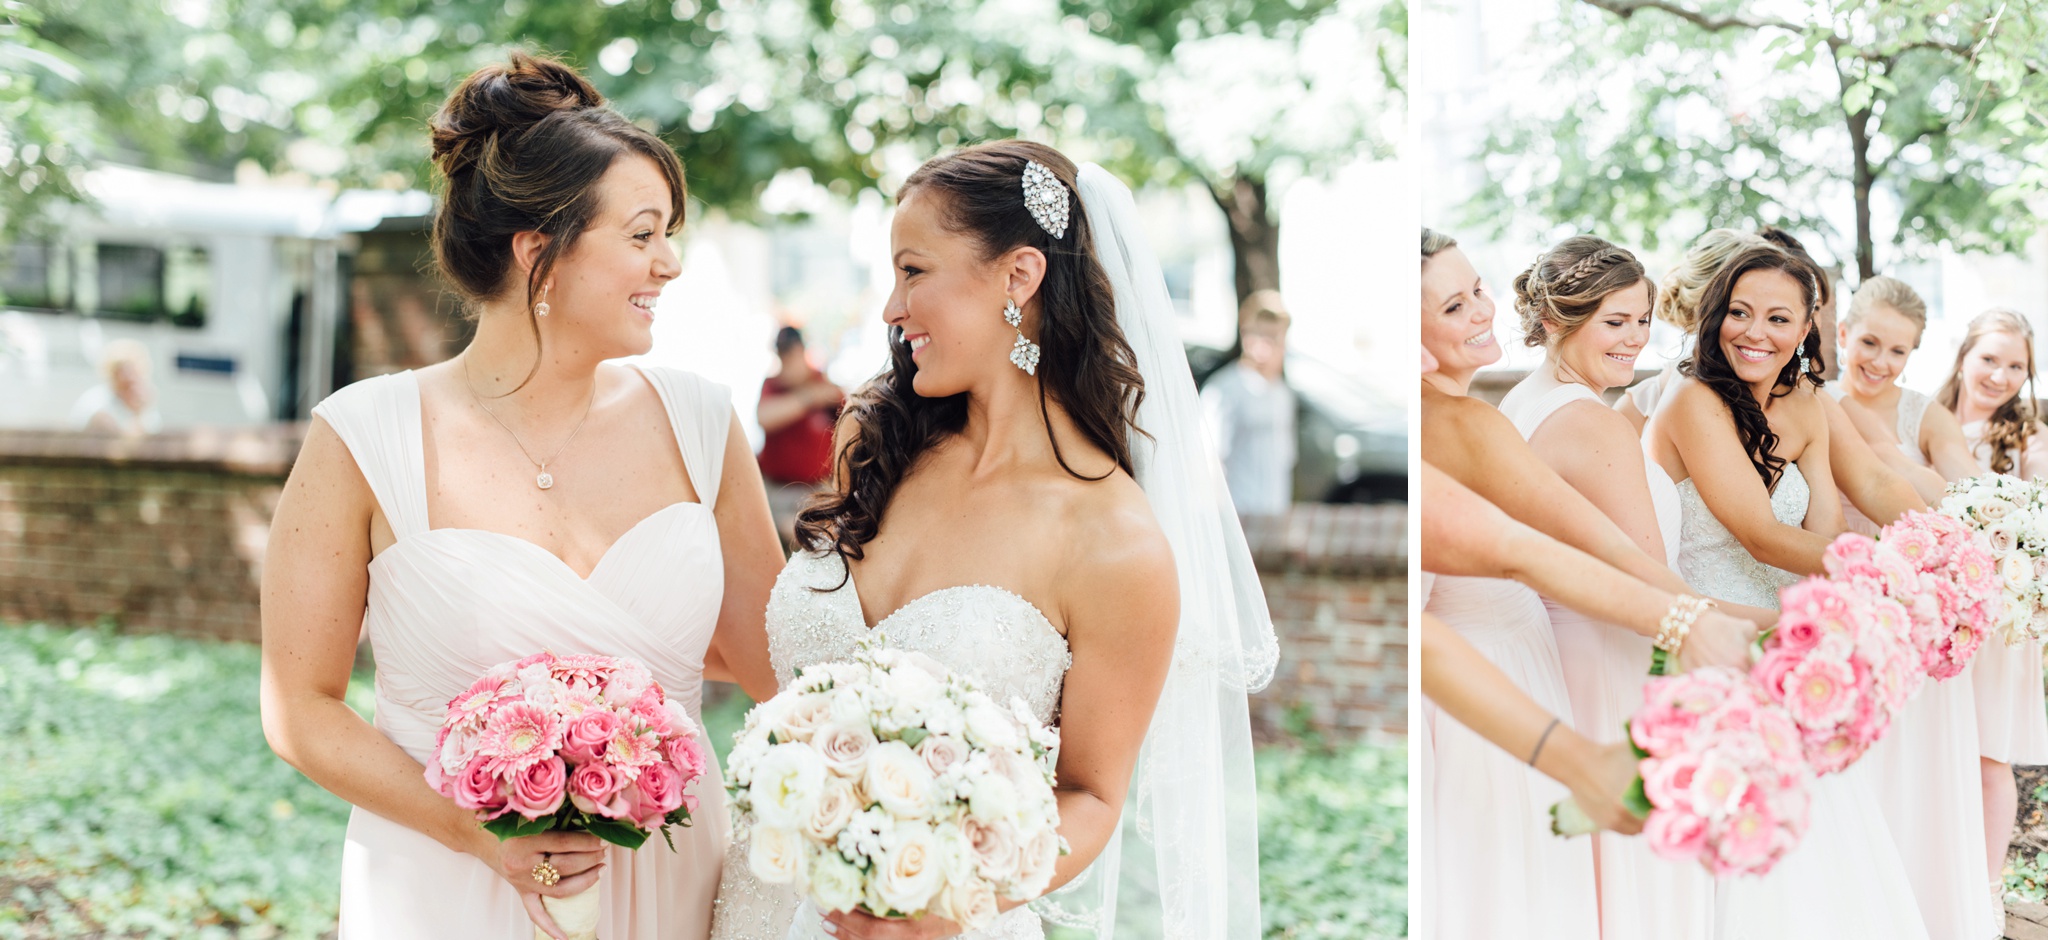 27 - Stephanie + Justin - Crystal Tea Room - Philadelphia Wedding Photographer - Alison Dunn Photography photo